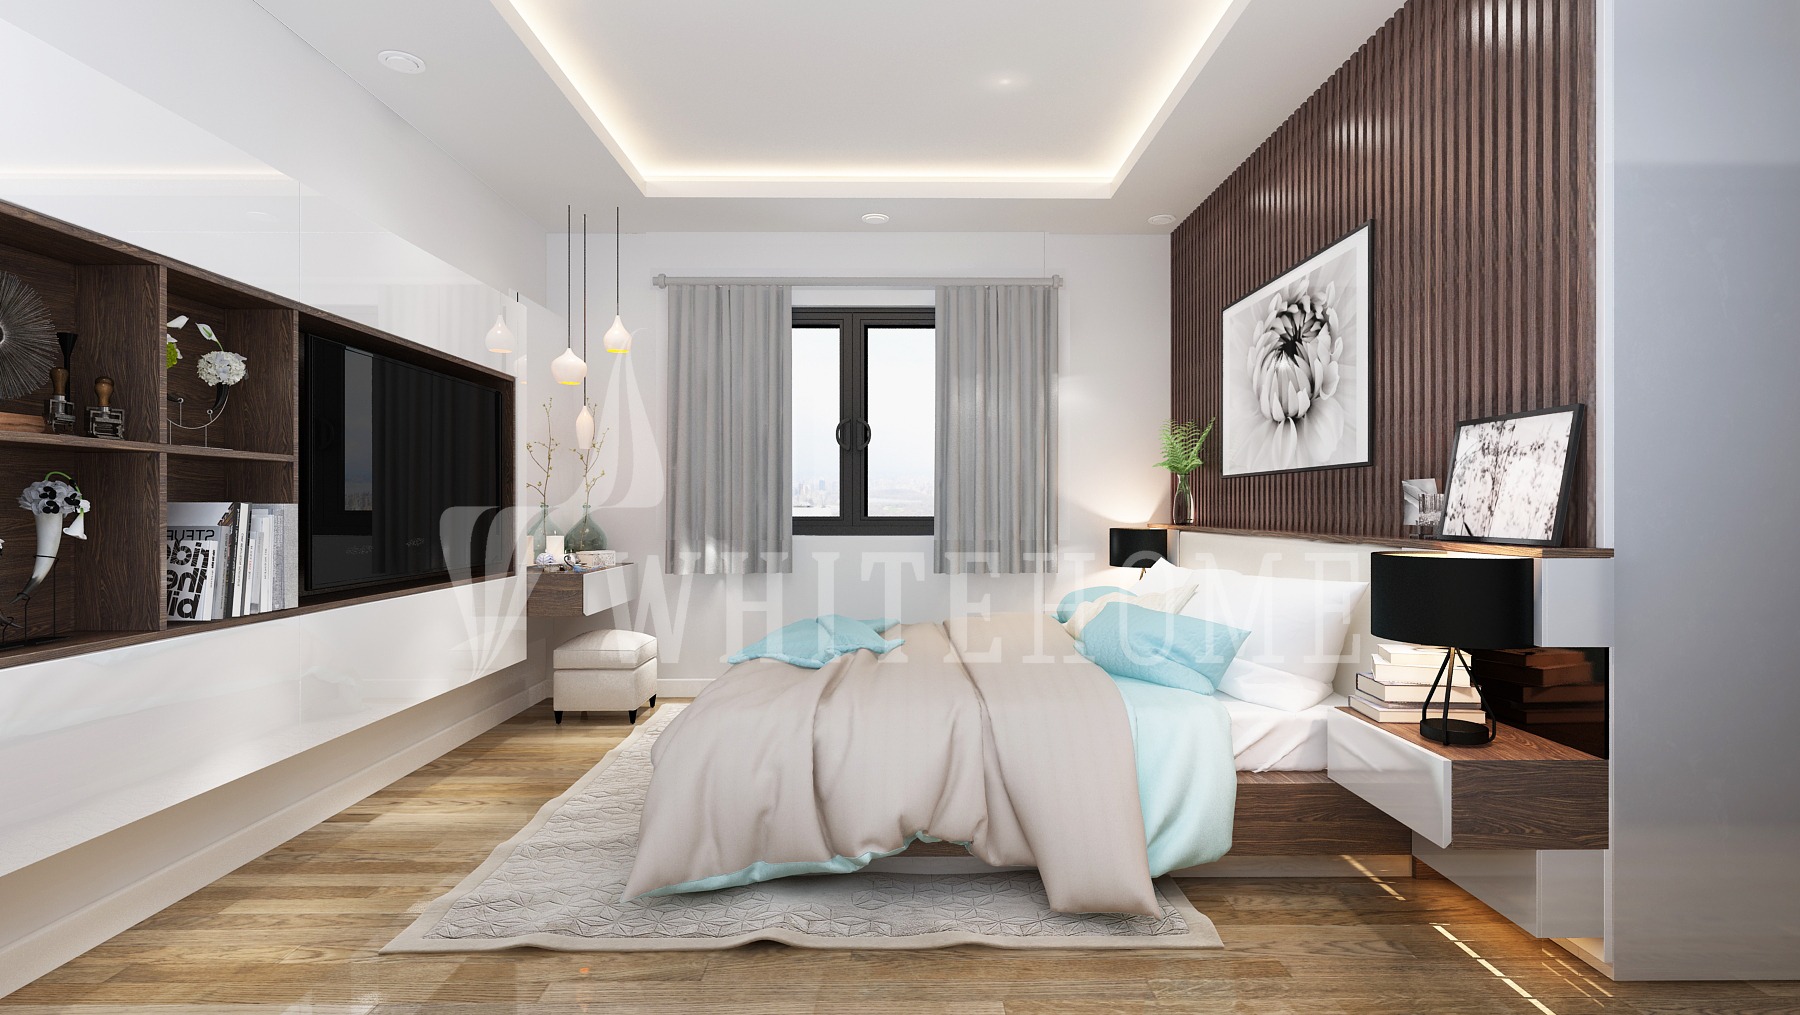 Nội thất White Home - Bí quyết bố trí nội thất đẹp cho căn hộ chung cư